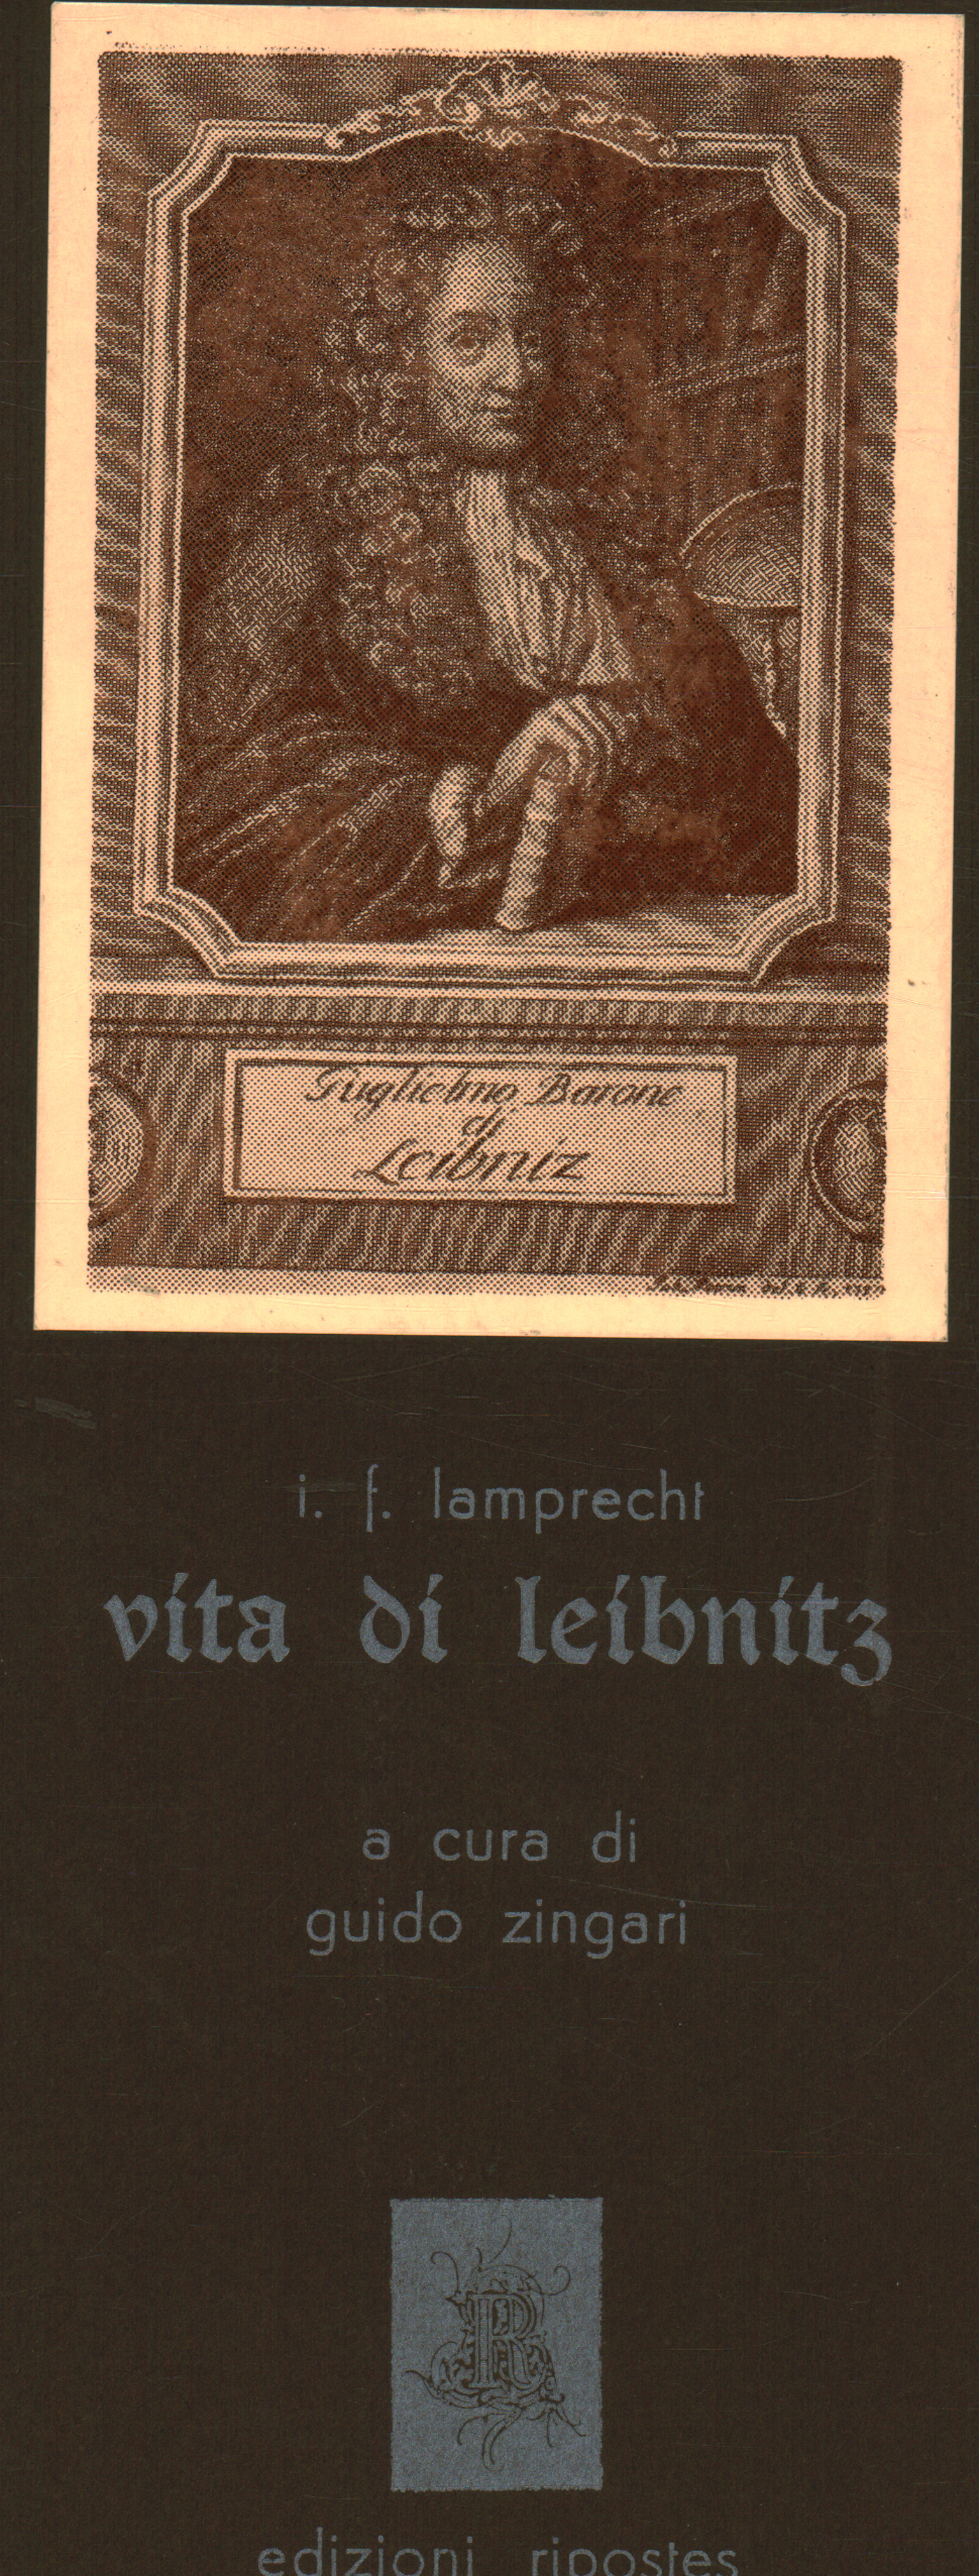 La vie de Leibnitz, I. F. Lamprecht